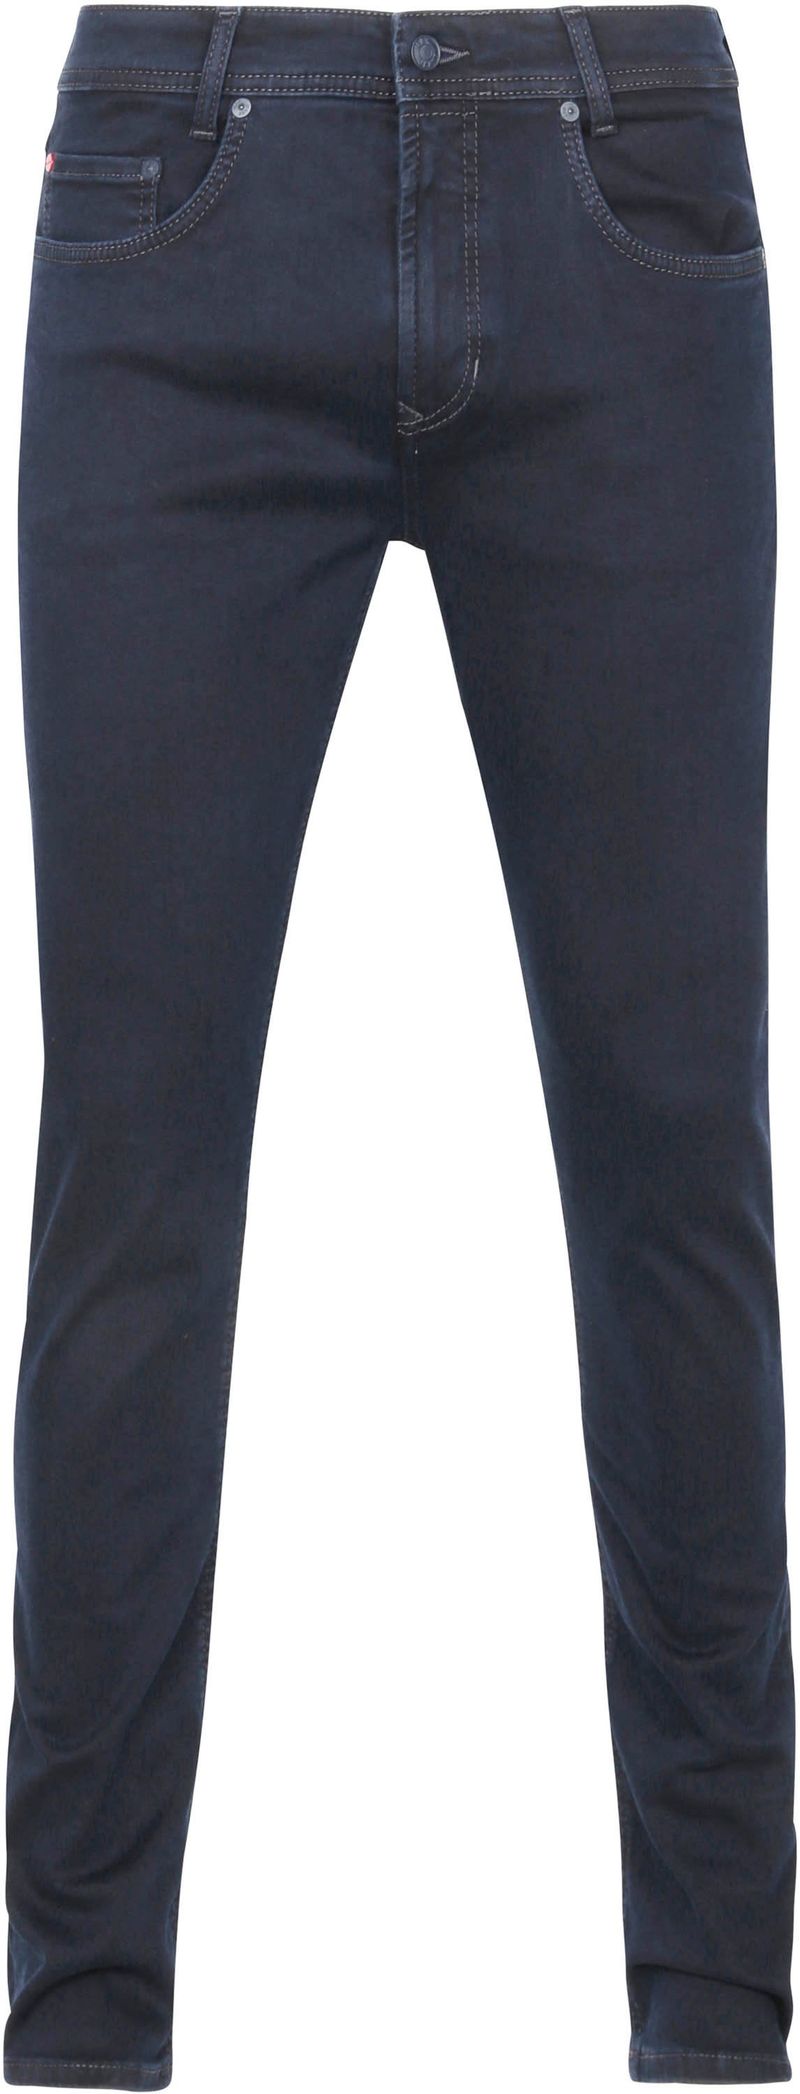 Mac Jeans Arne Pipe Flexx Superstretch H799 - Größe W 34 - L 34 günstig online kaufen